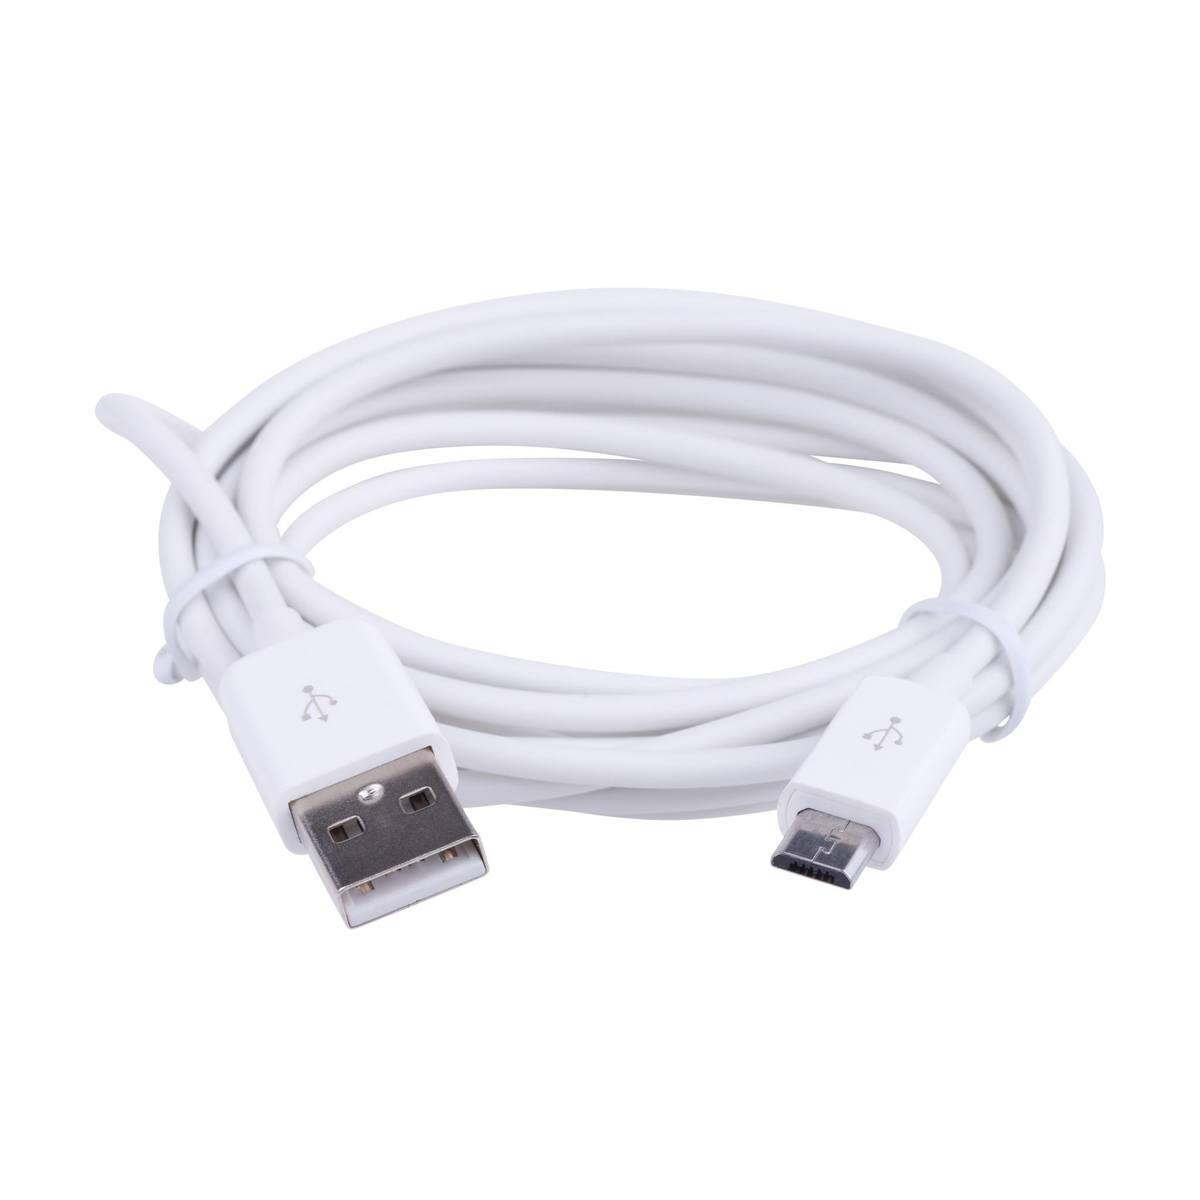 Se Mikro USB - 2 m kabel, Hvid hos Powerbanken.dk